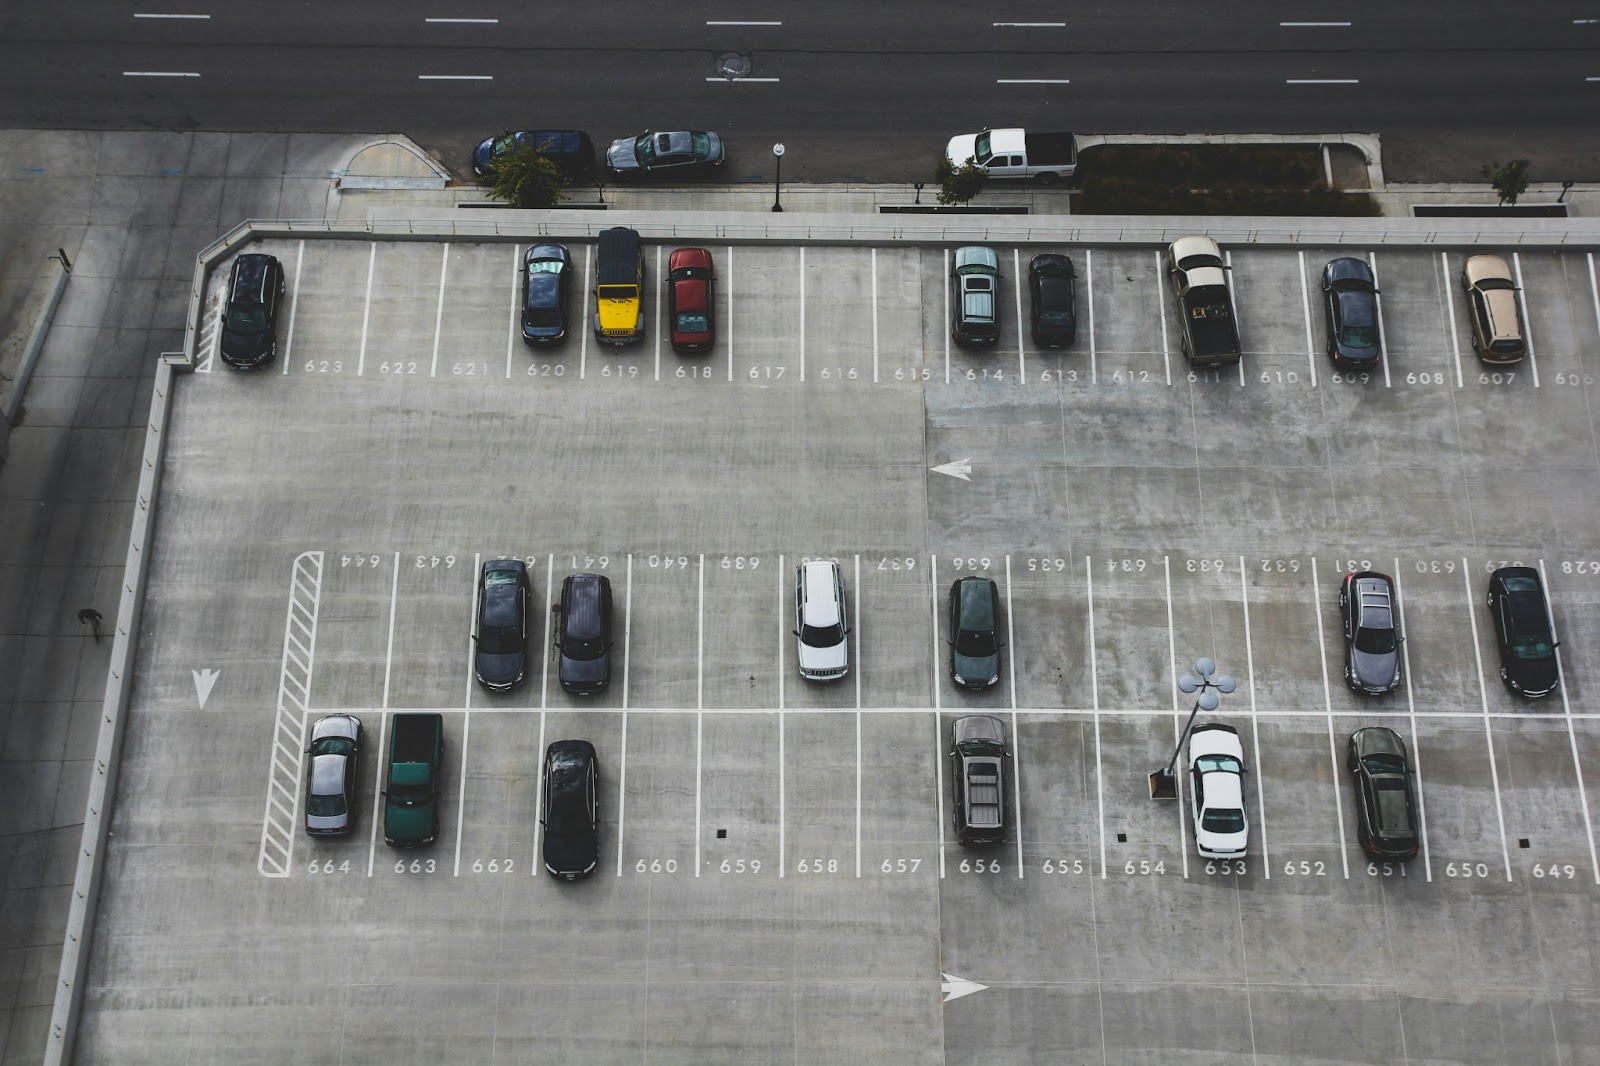 A large parking lot